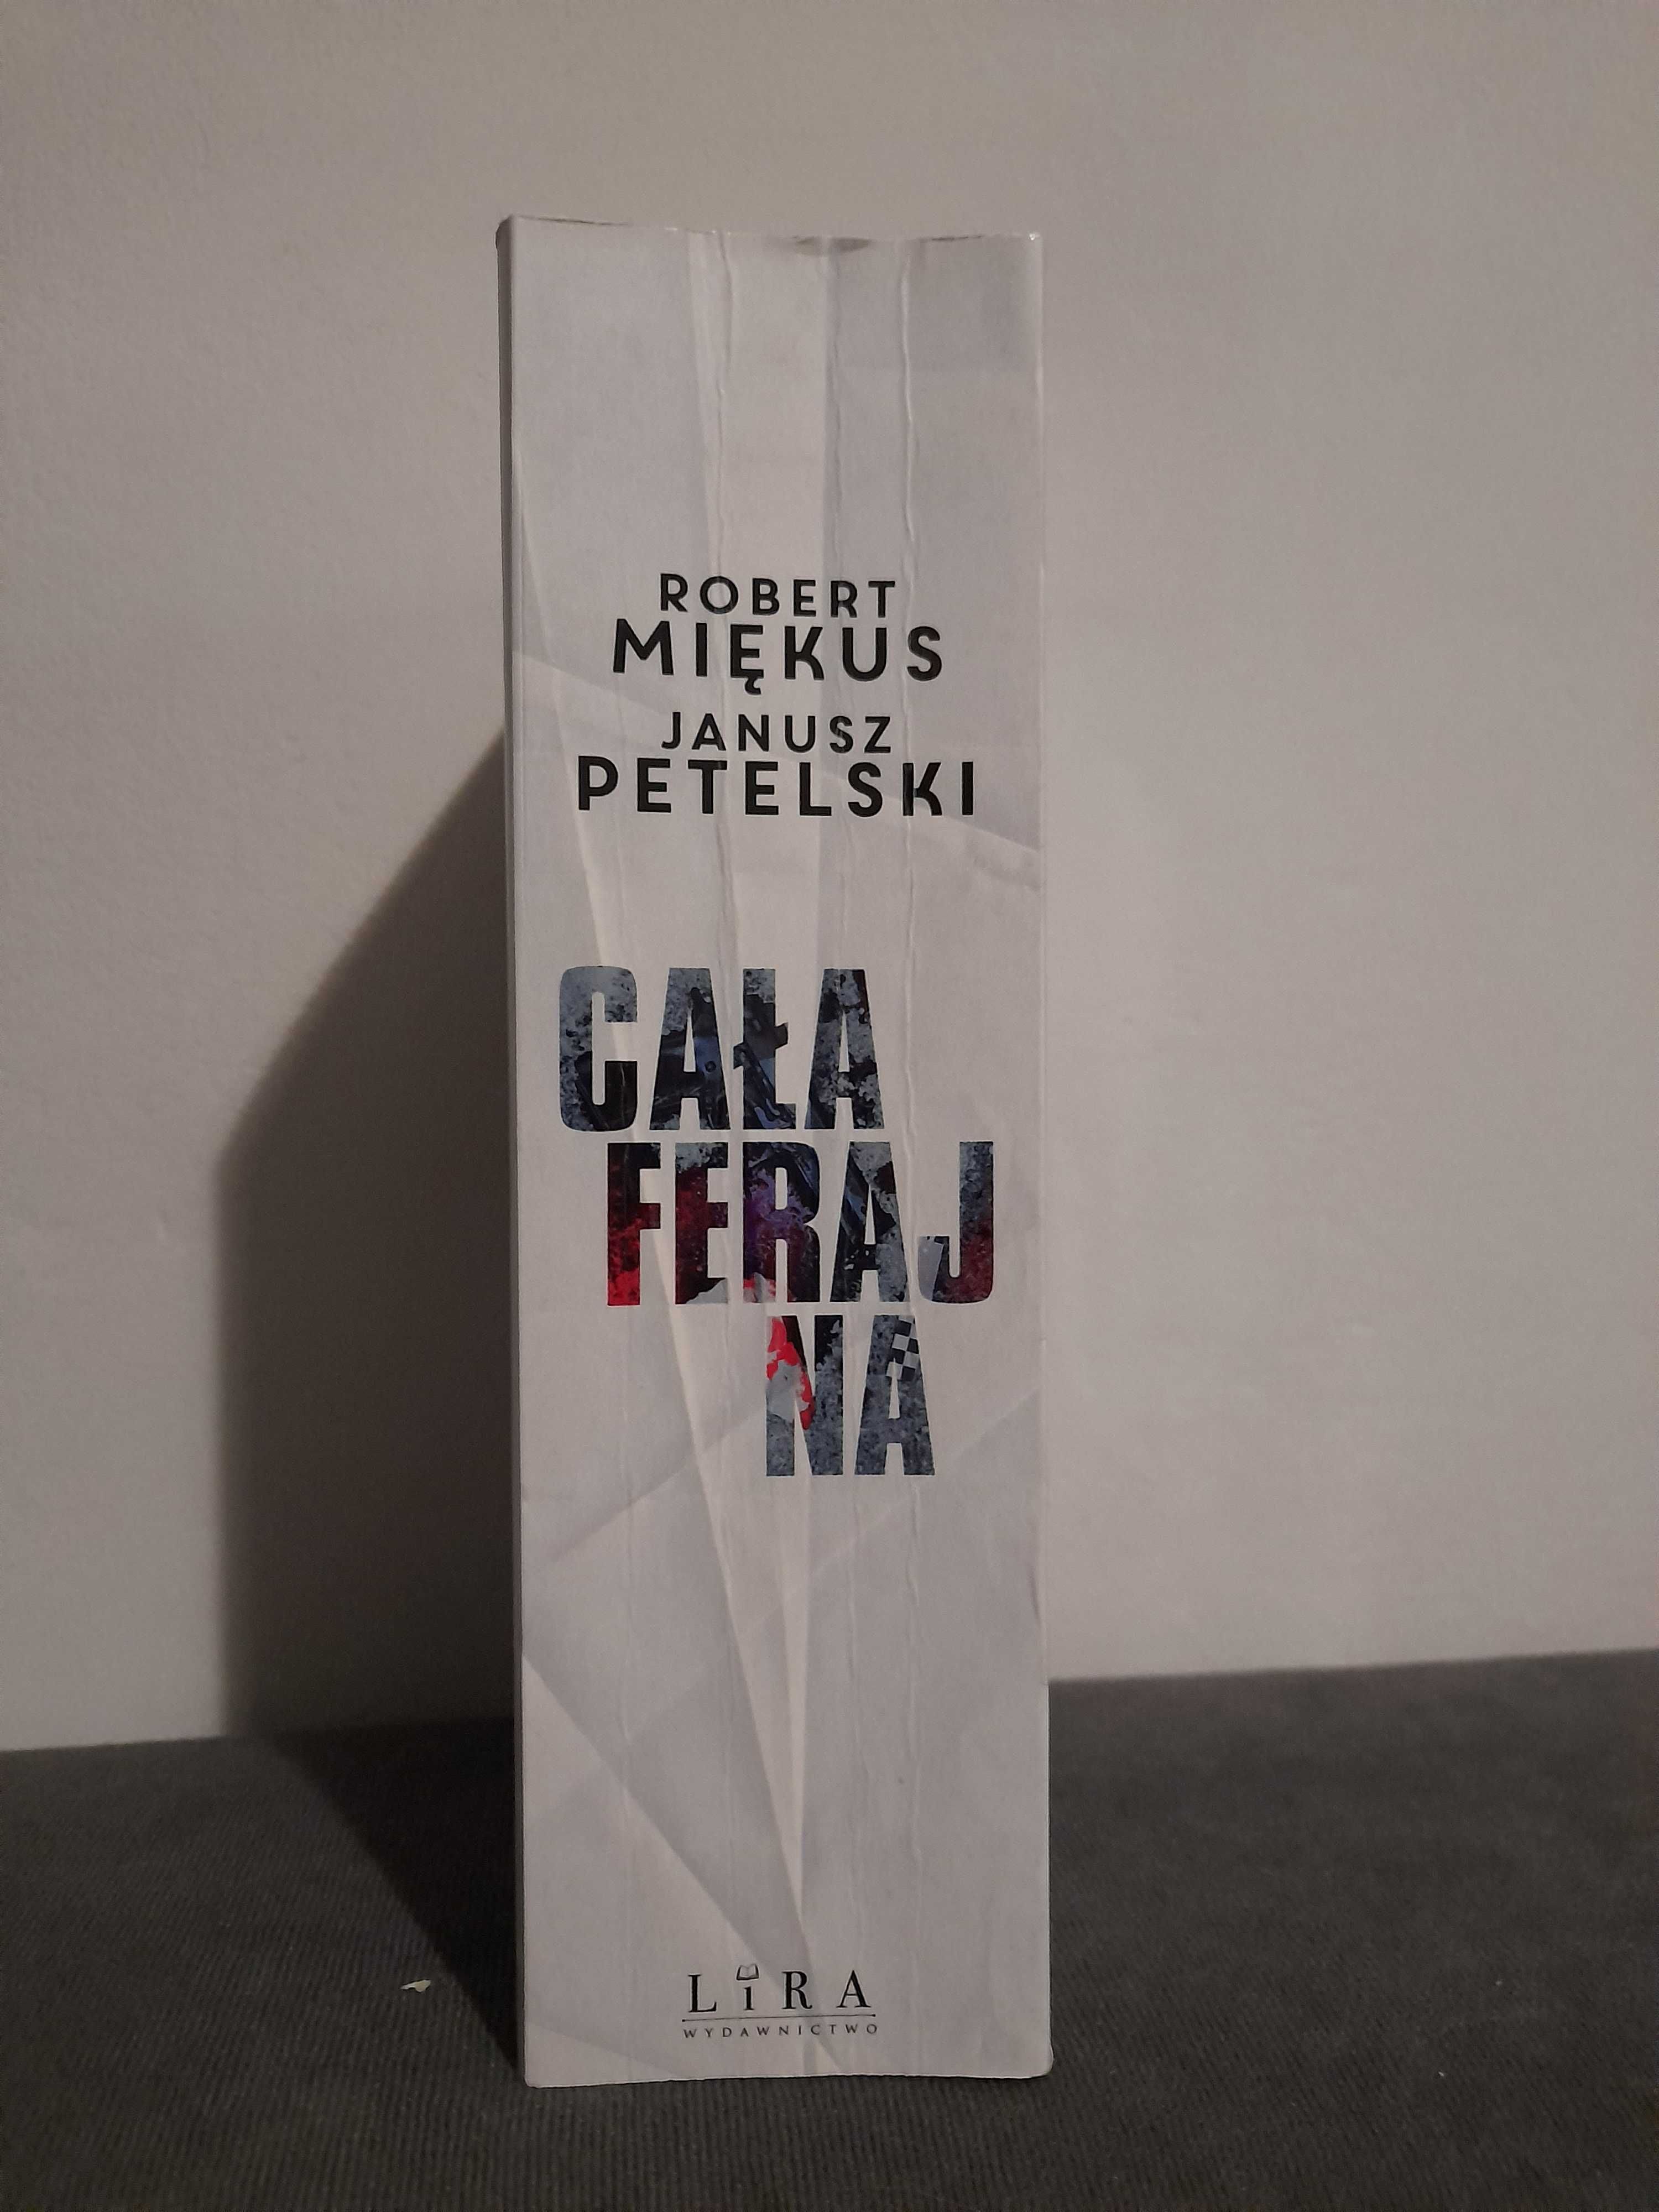 Książka "Cała ferajna" Robert Miękus, Janusz Petelski